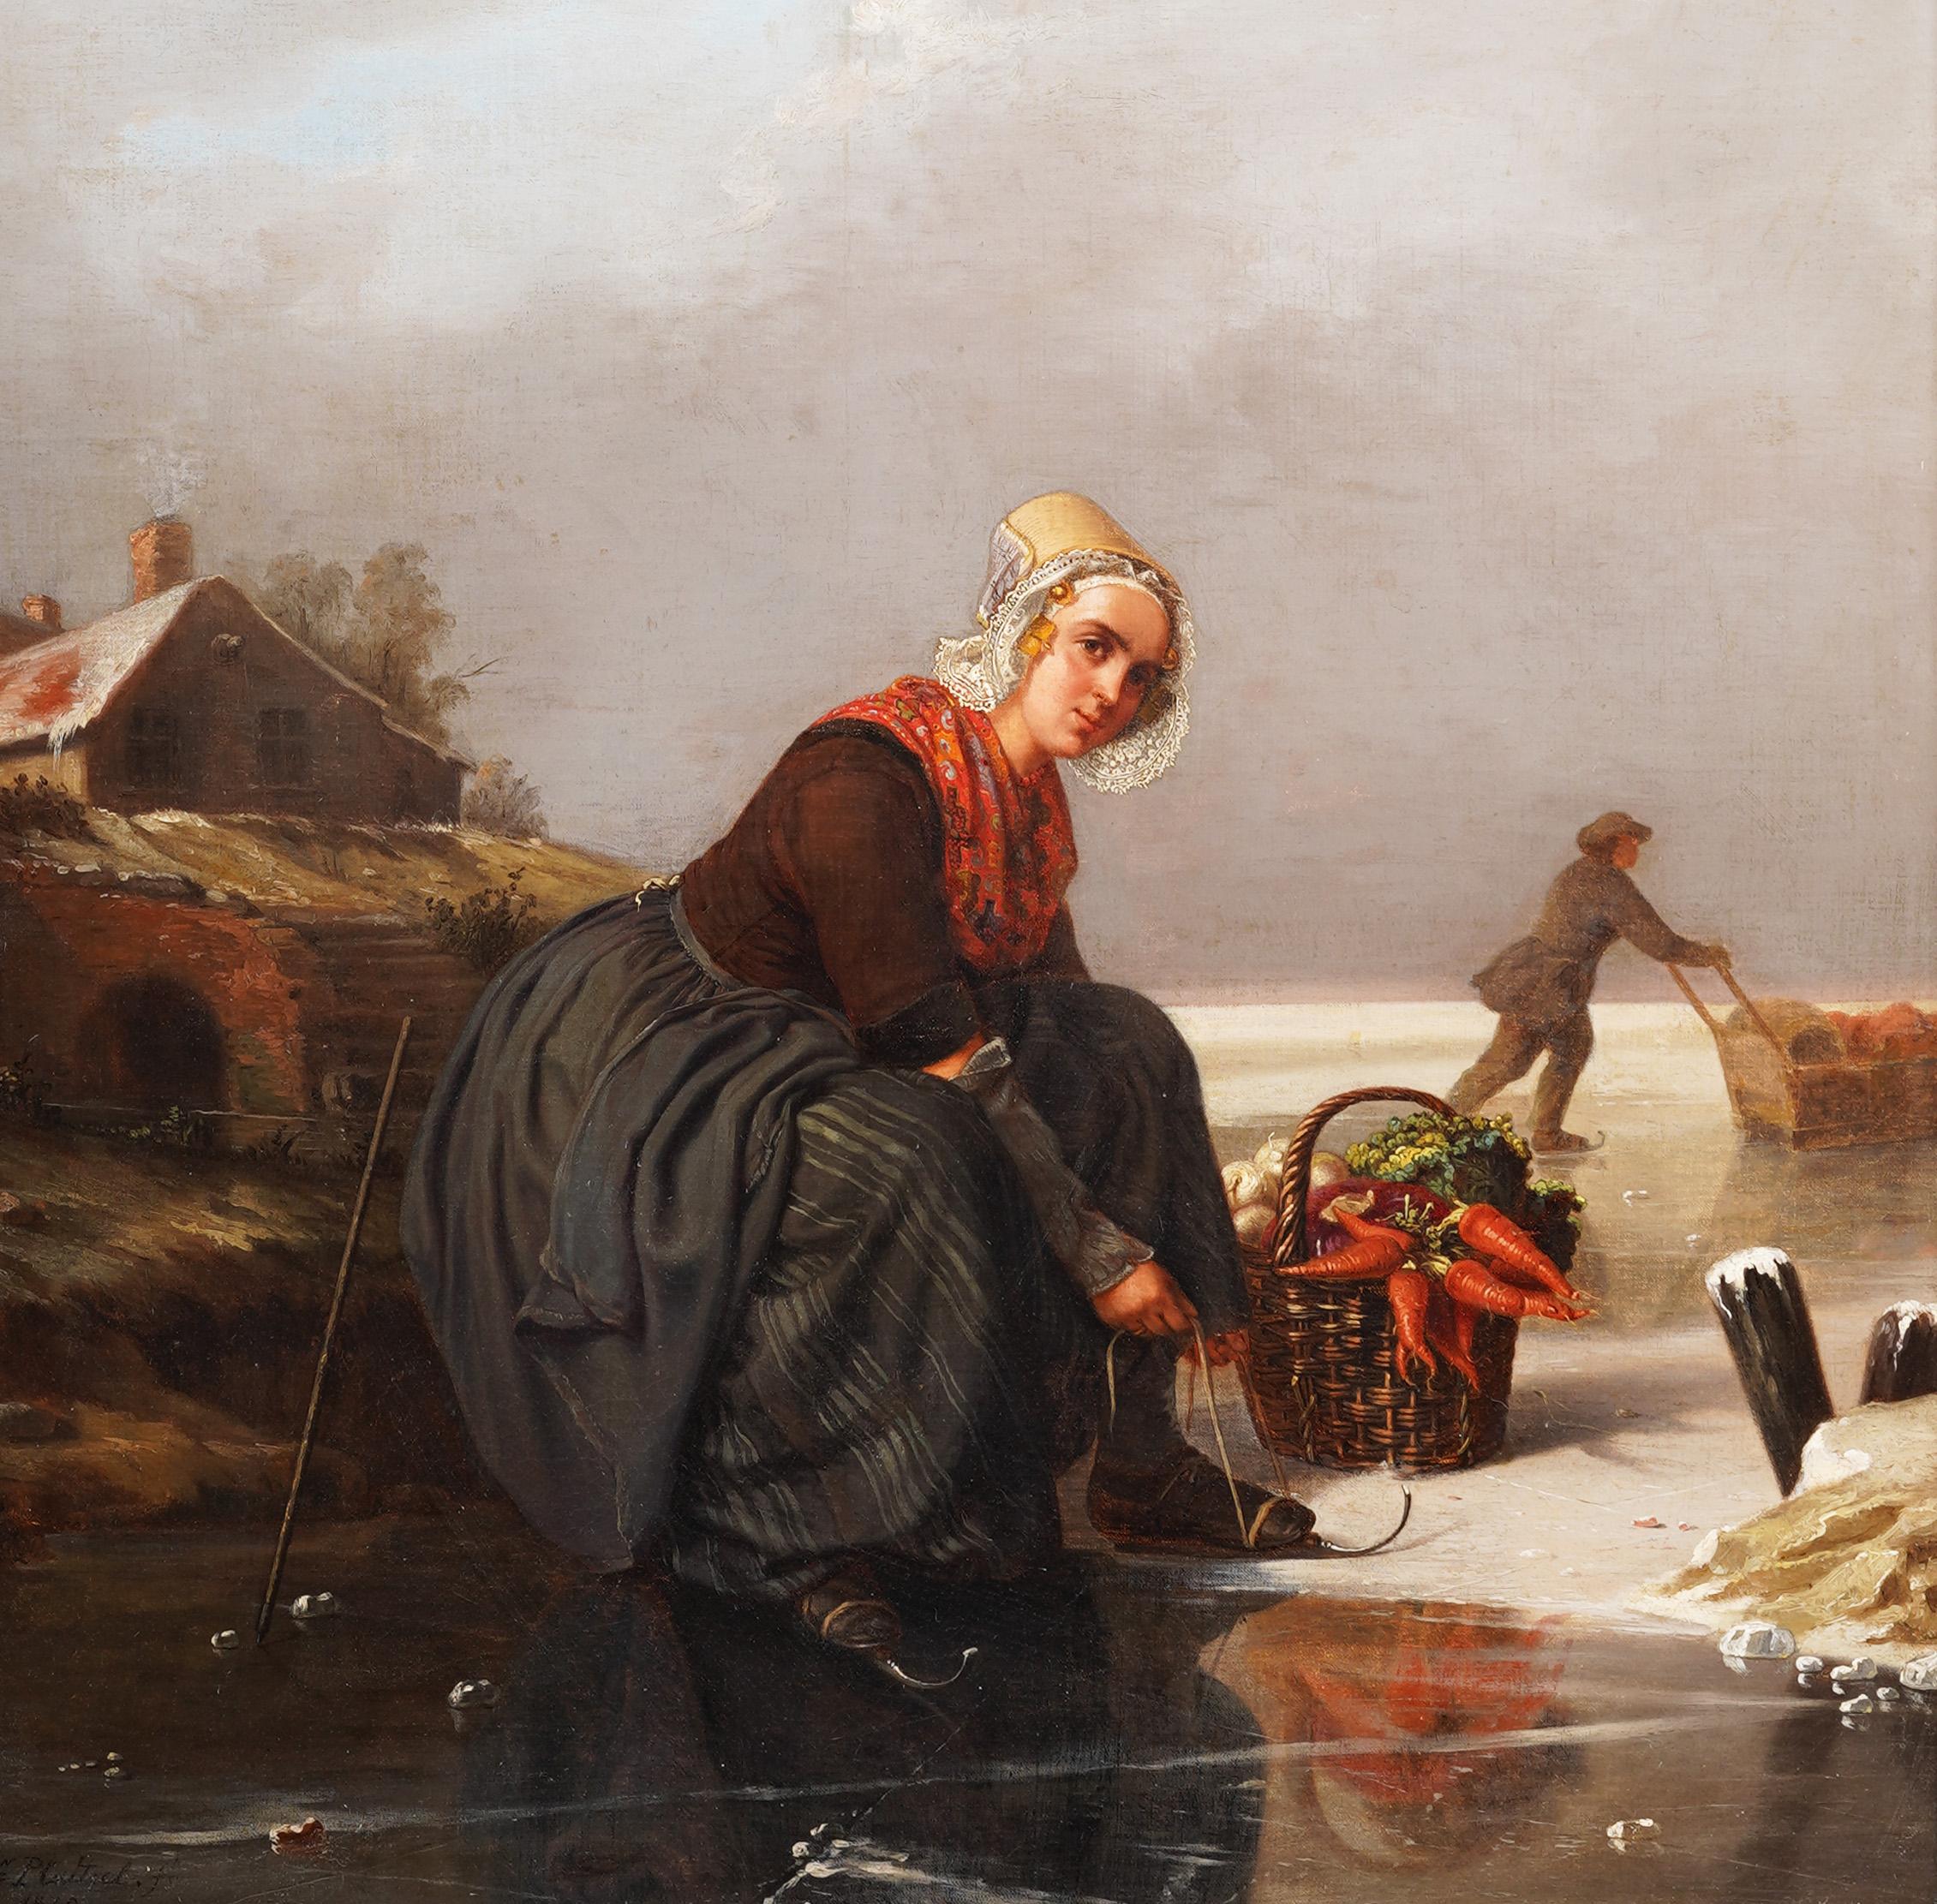 Superbe peinture à l'huile hollandaise du 19e siècle avec patineuse, paysage d'hiver, signée. - Réalisme Painting par Unknown